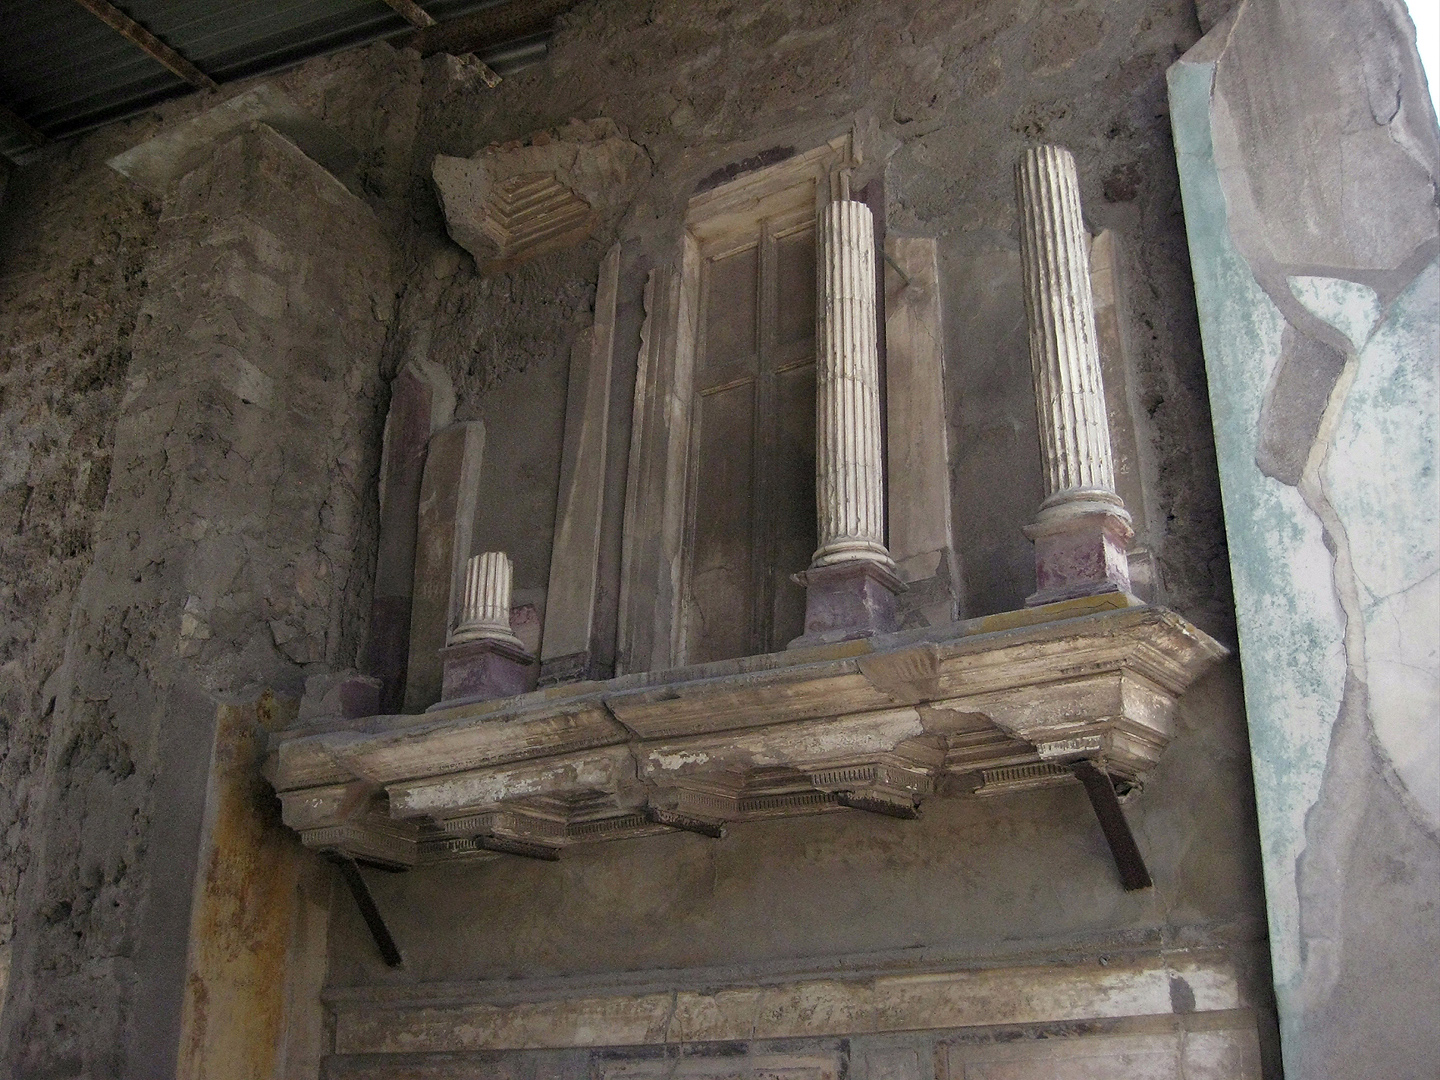 Huis van de Faun, Pompeii; House of the Faun, Pompeii